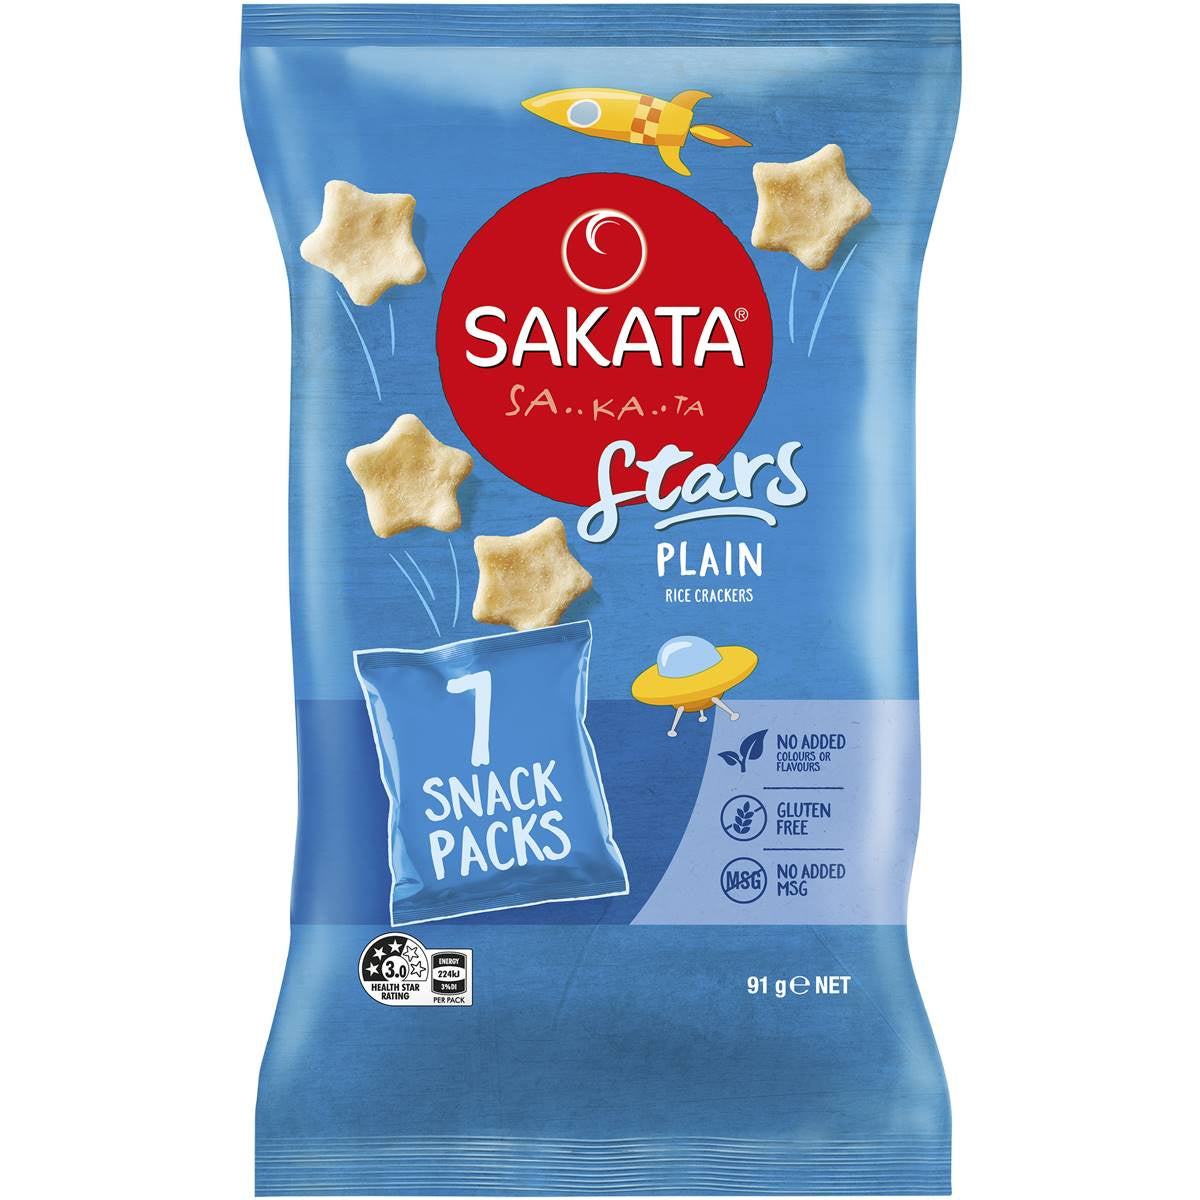 Sakata Stars Rice Crackers GF 7PK